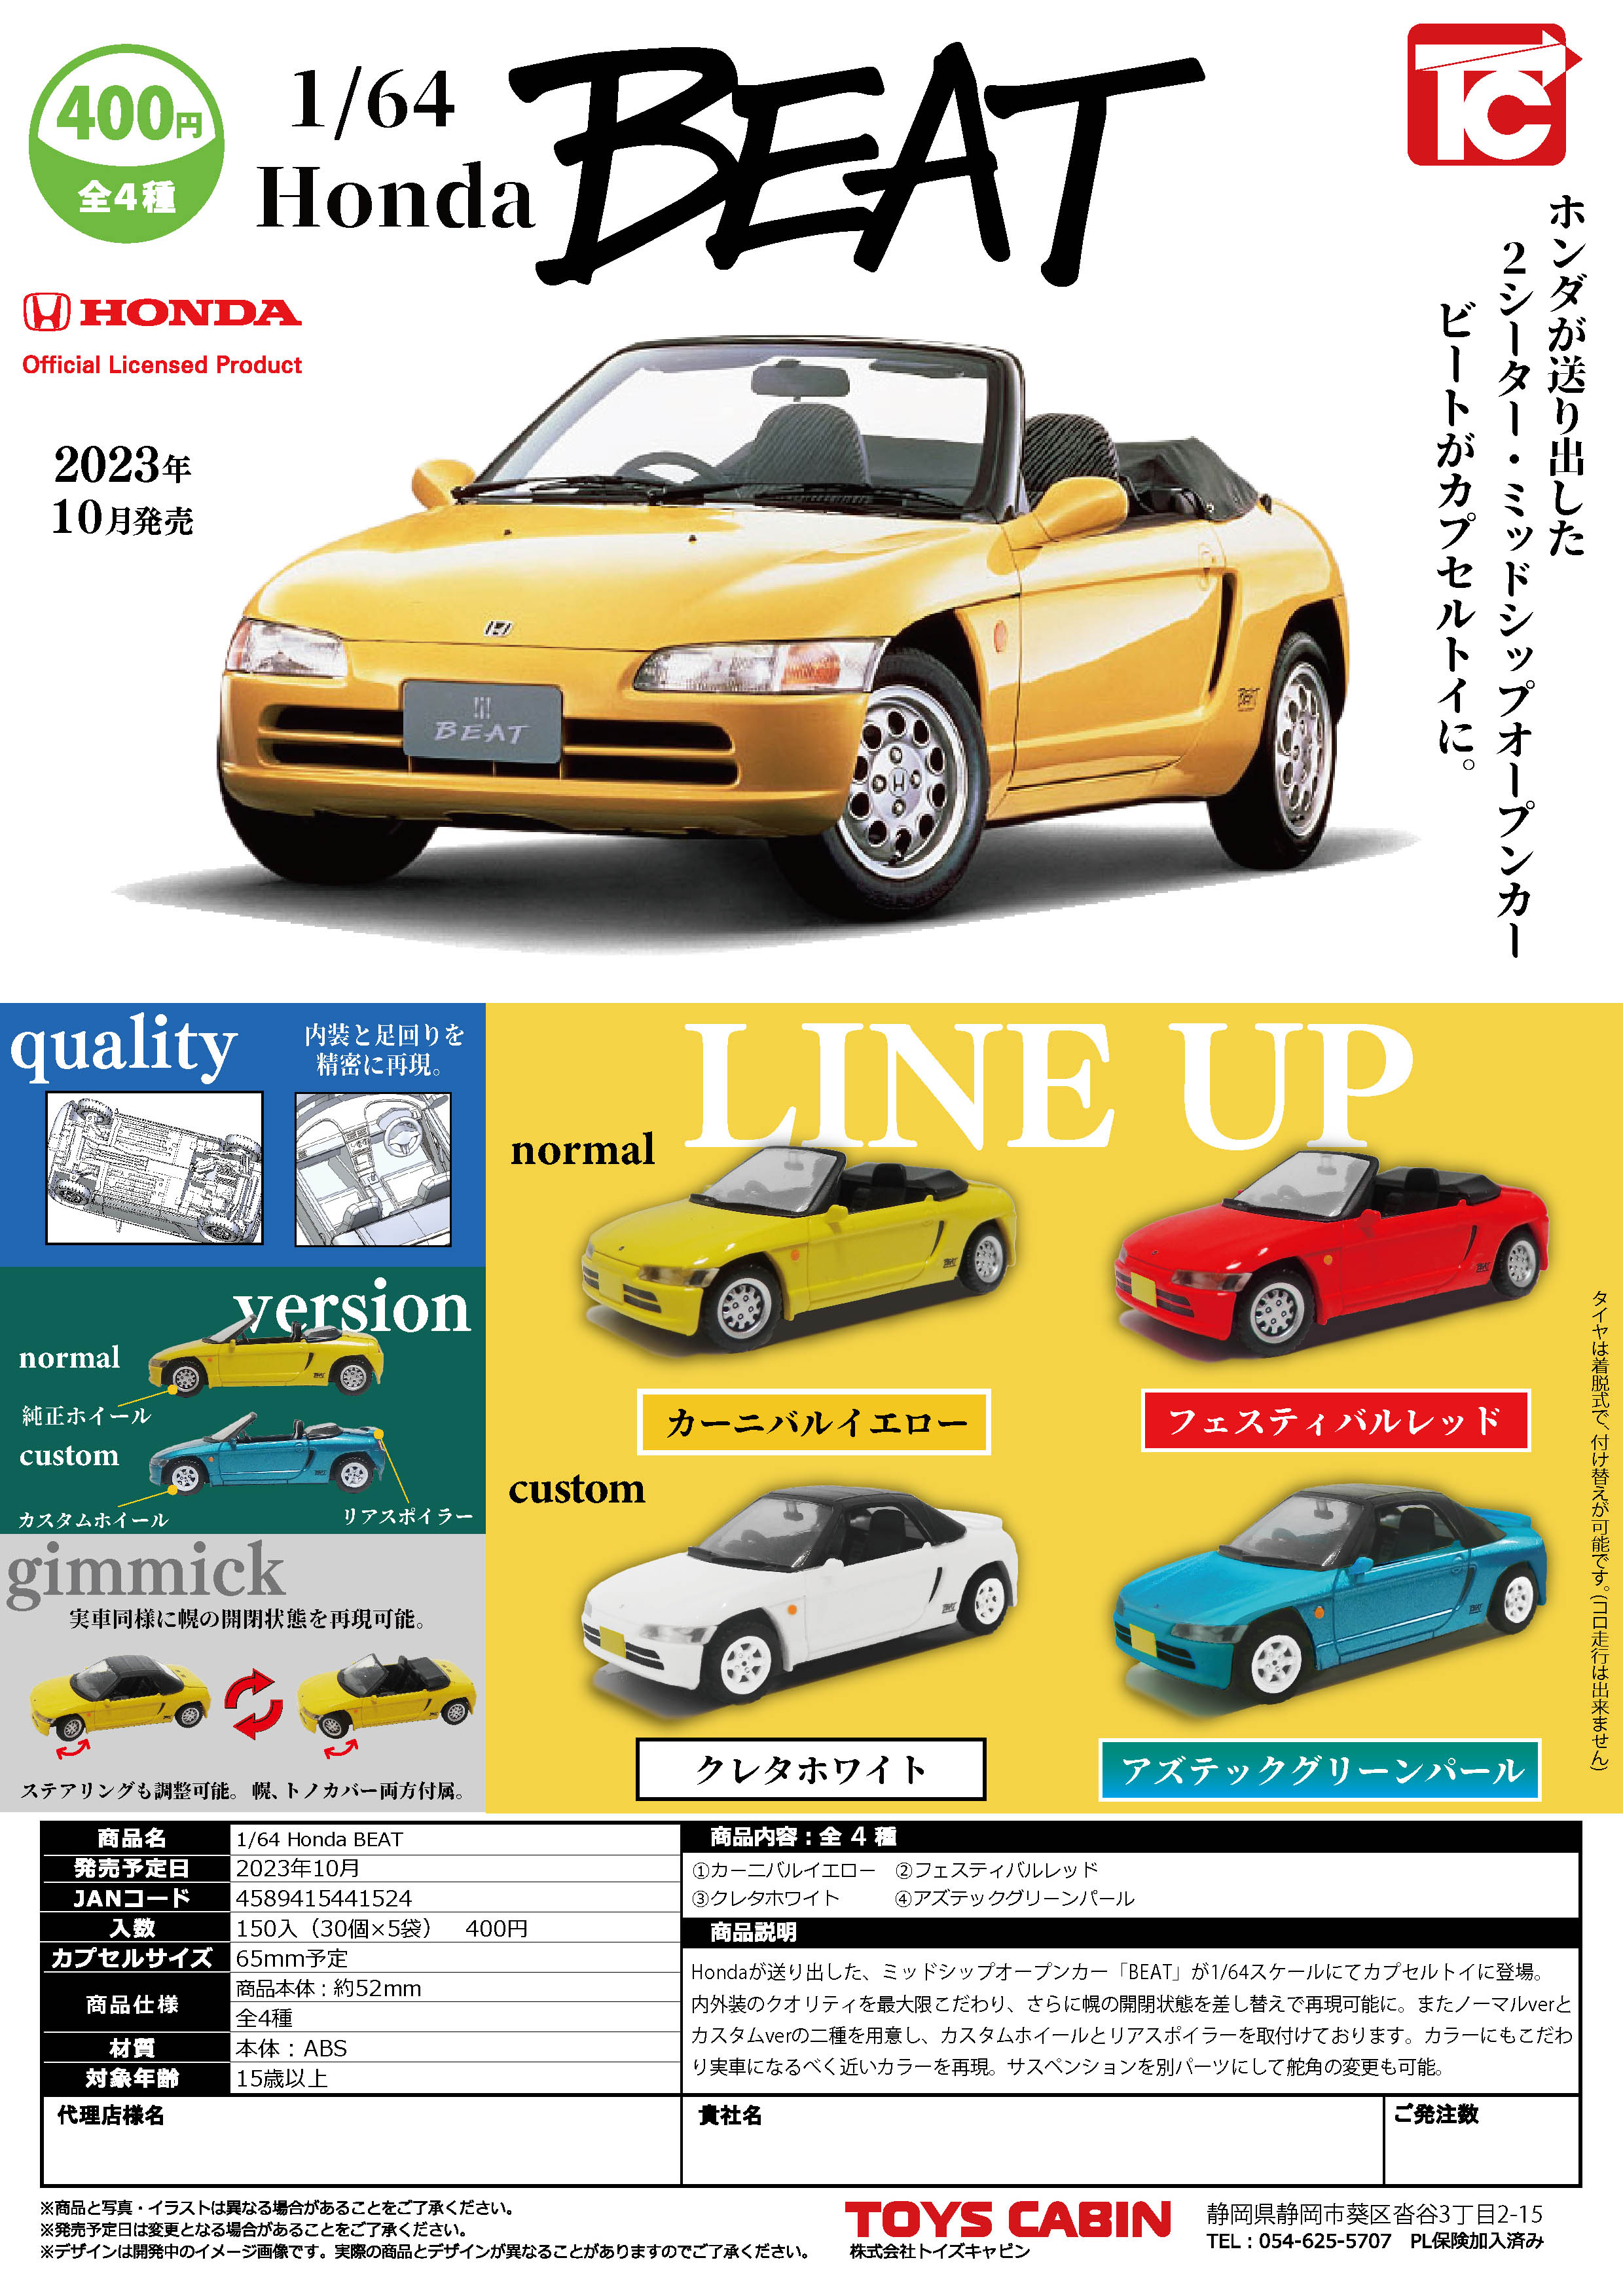 虾壳社 现货日本TOYS CABIN扭蛋 1/64 Honda BEAT小车车 模型汽车